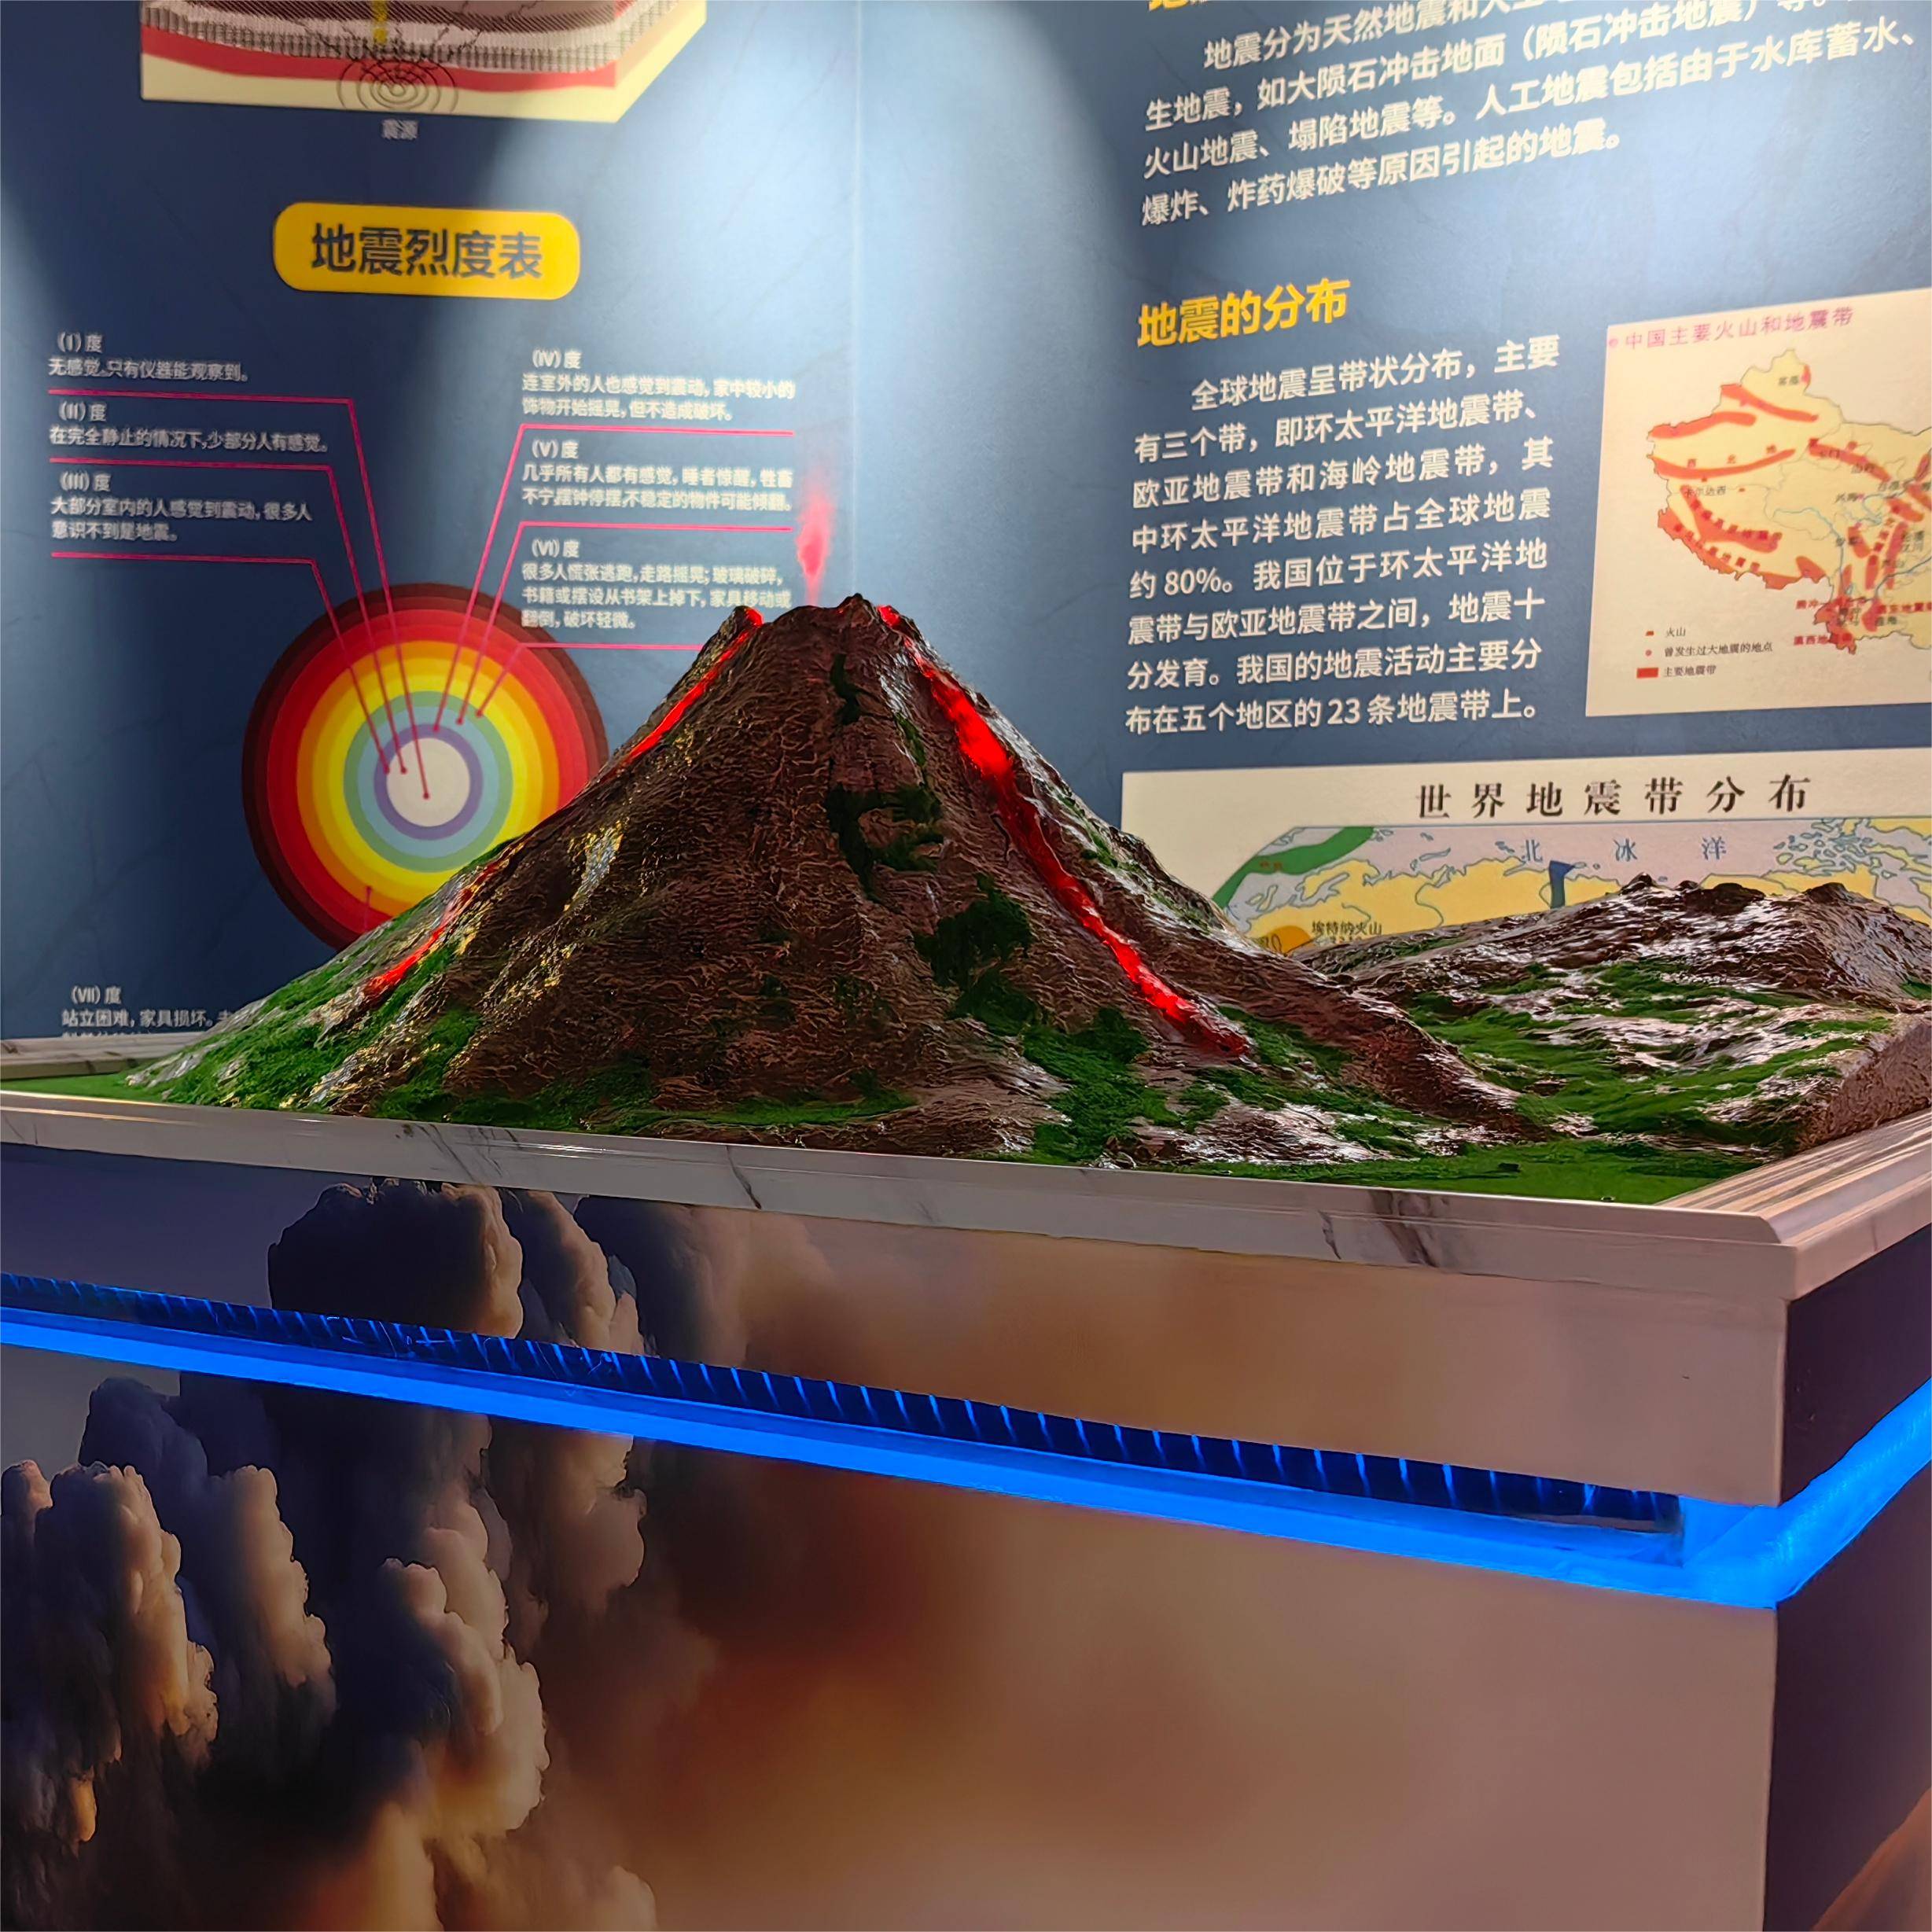 原创硕博模型地质地貌火山喷发仿真演示沙盘模型